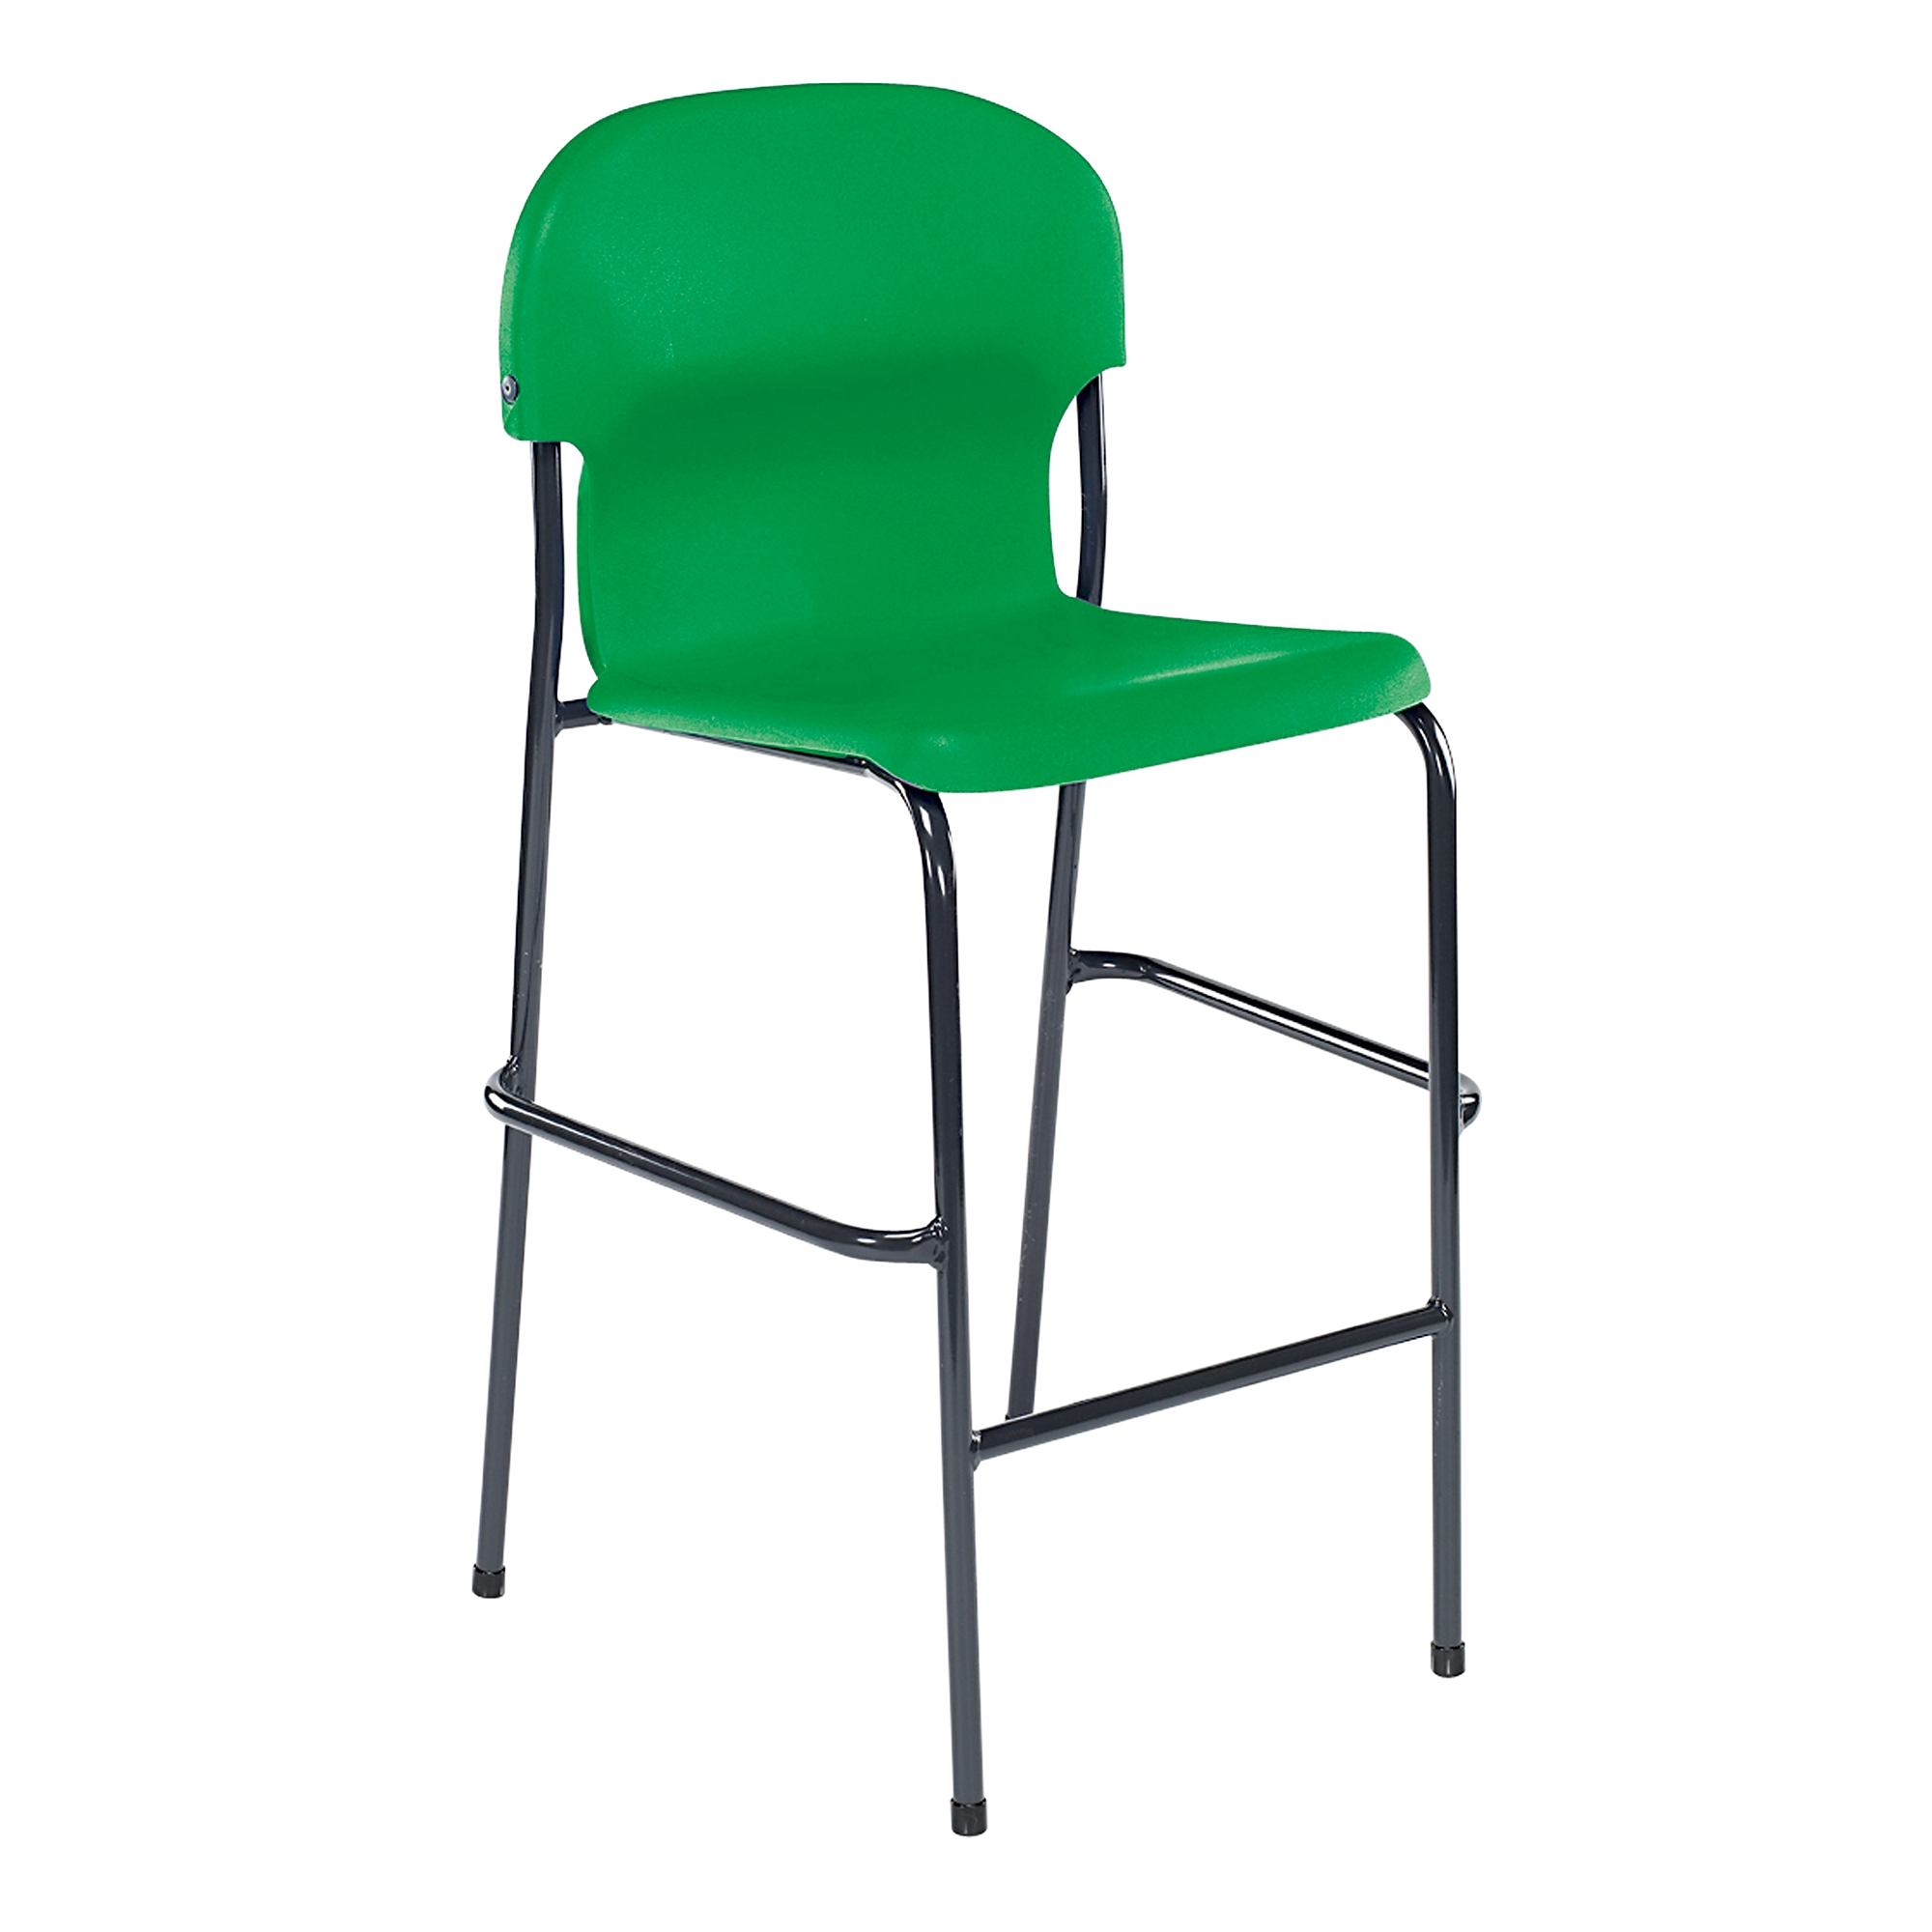 Chair 2000 High Chair - Green